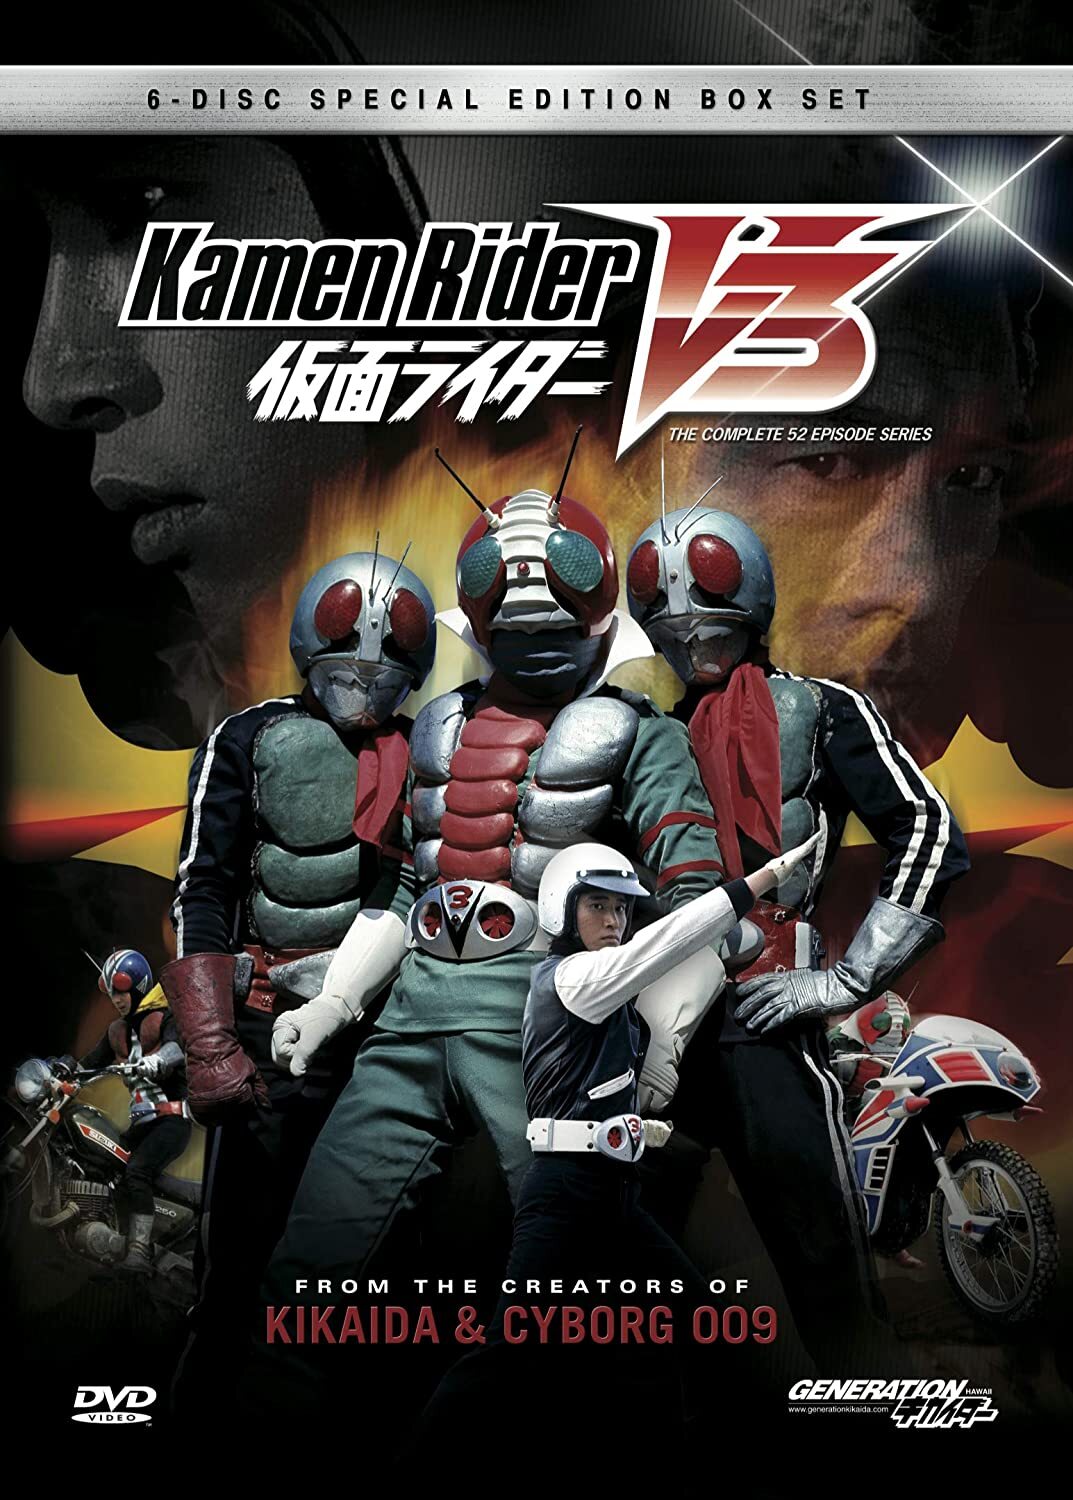 Kamen Rider V3 DVD (Special Edition Box Set)